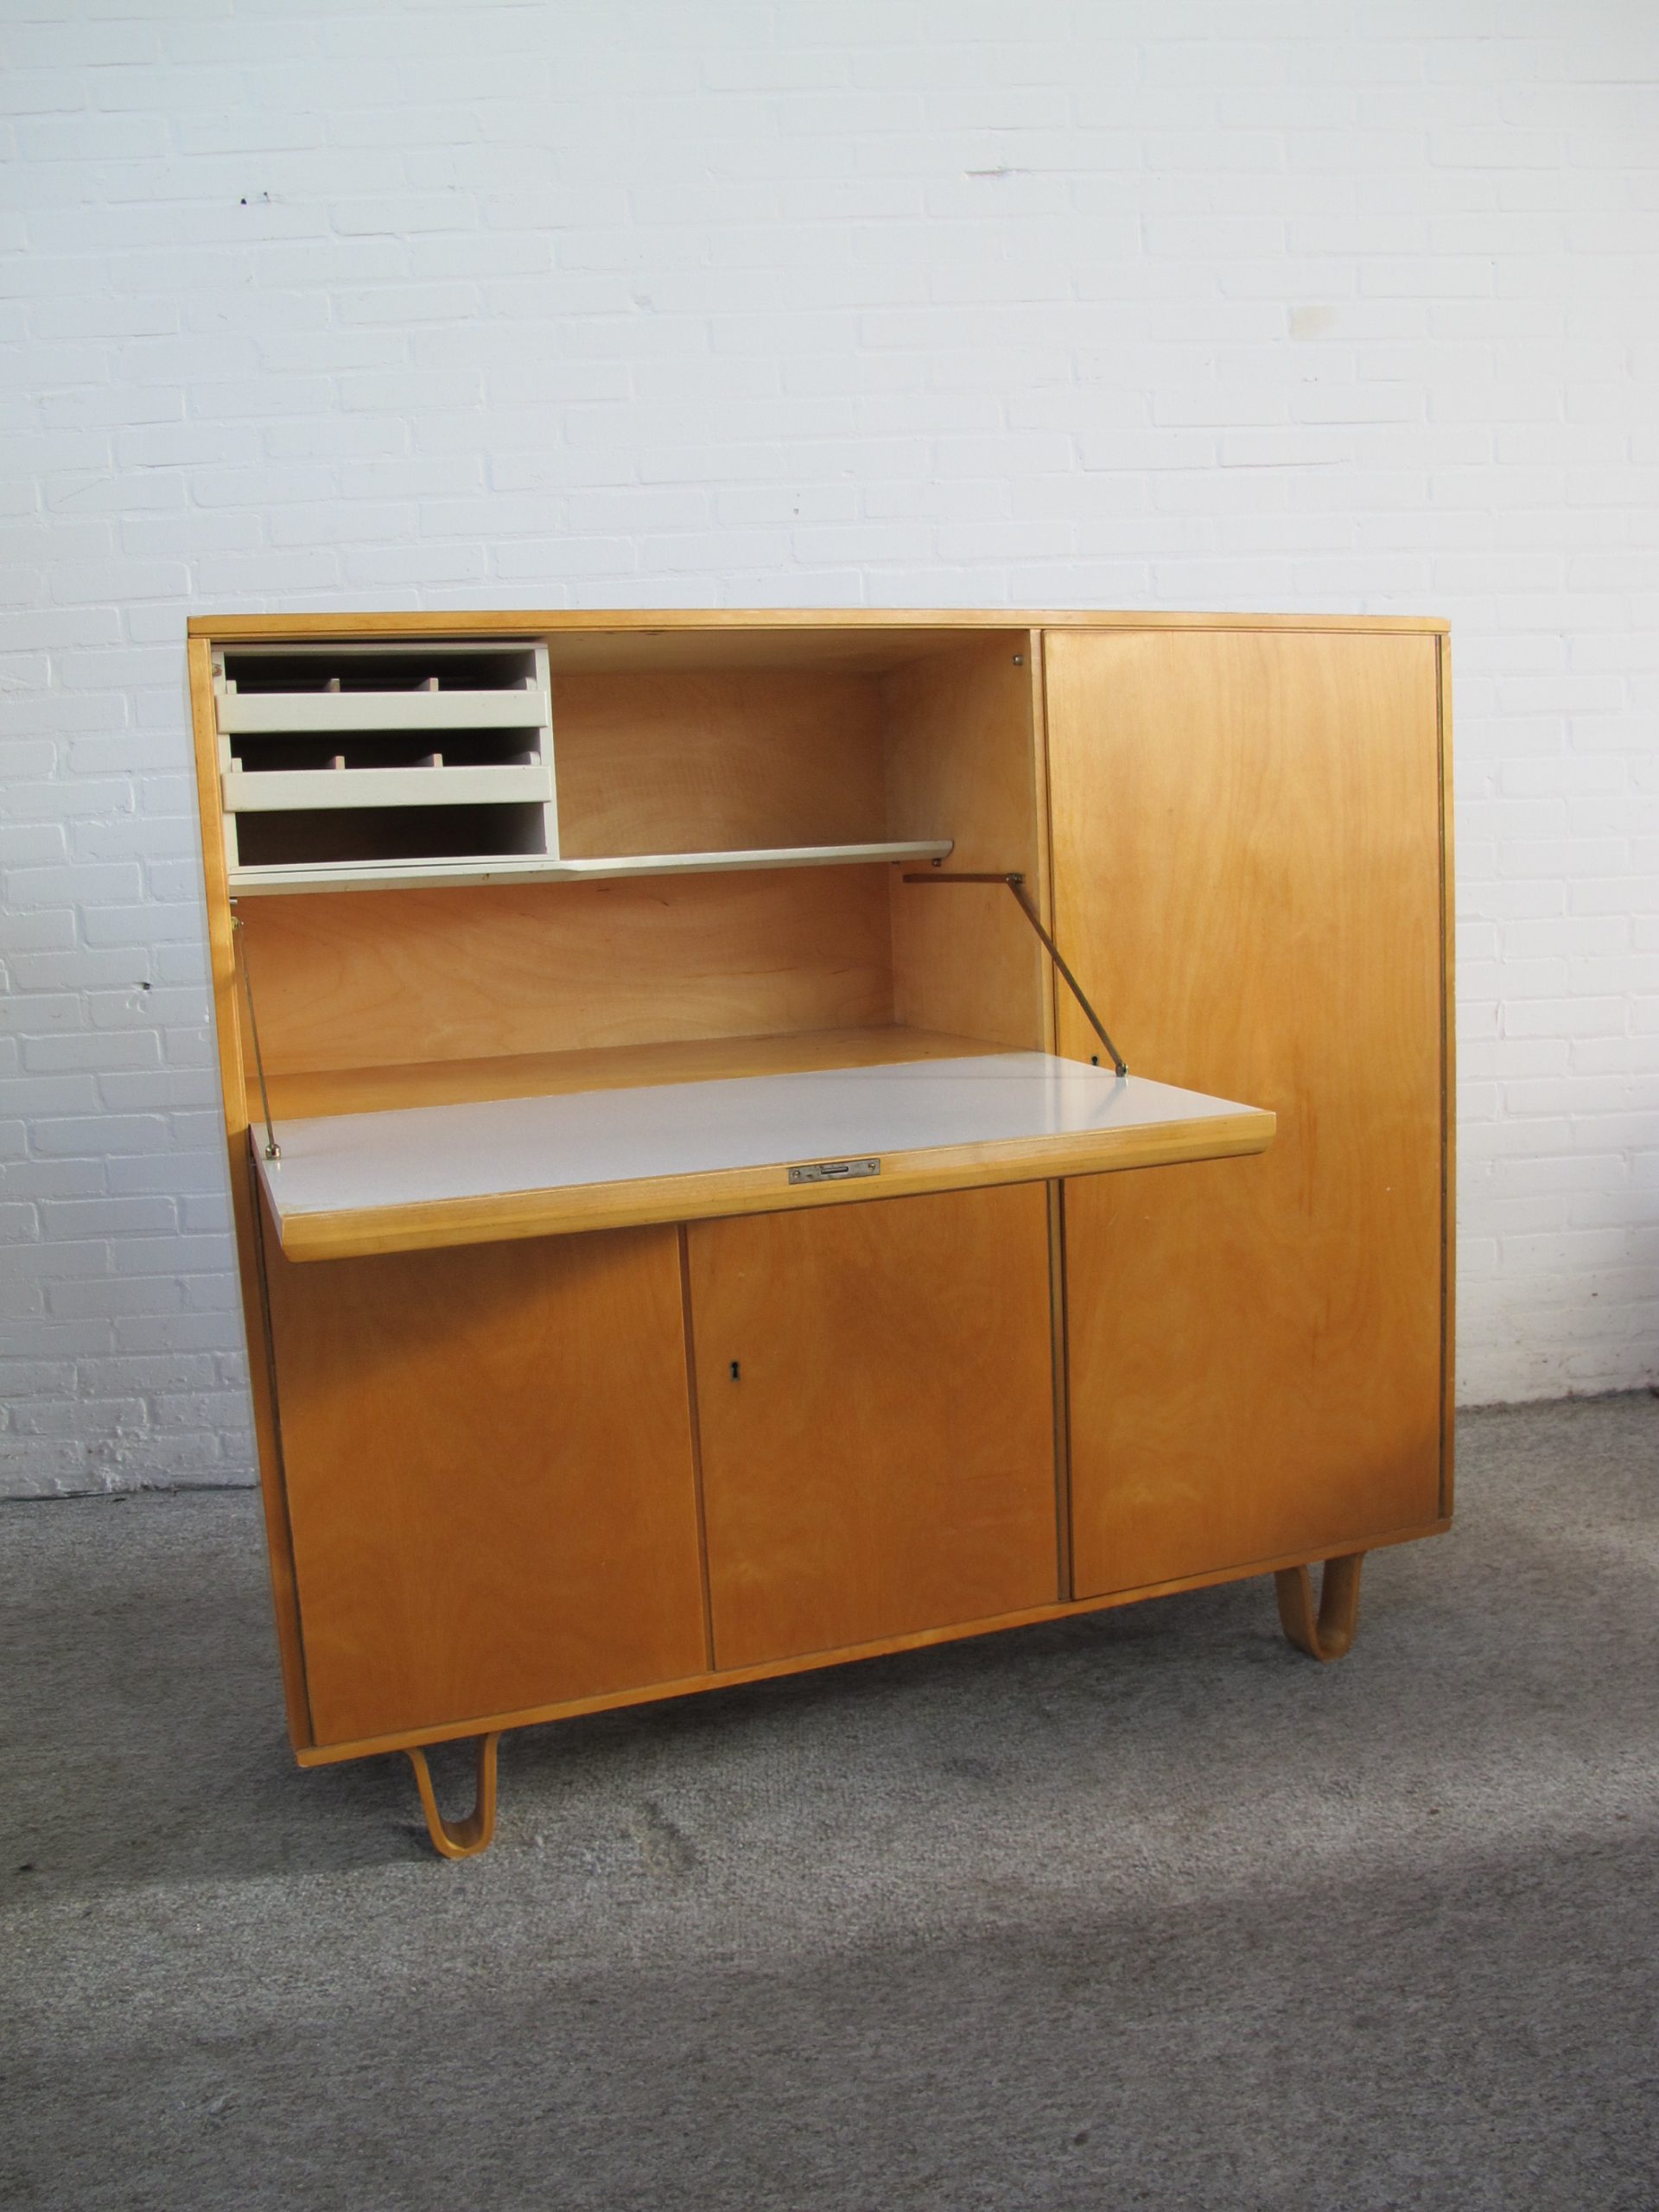 dressior sideboard highboard cabinet UMS Pastoe CB01 Cees Braakman vintage midcentury